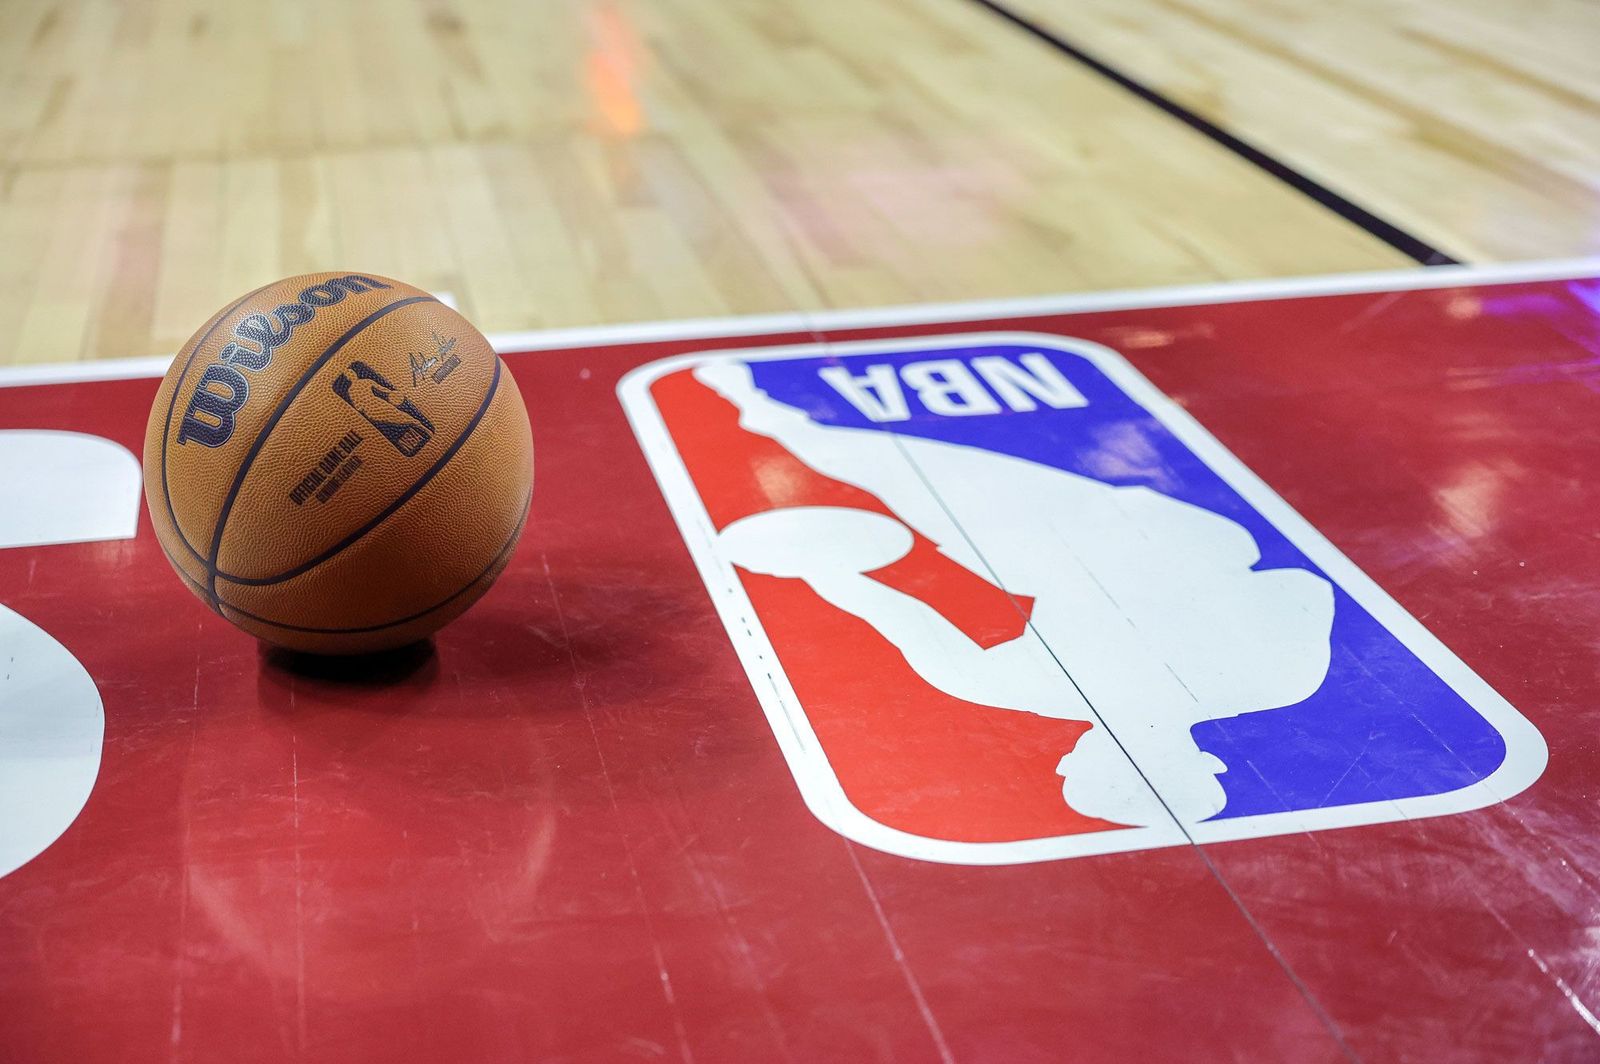 دوري كرة السلة الأميركي منفتح على بيع حصص للإمارات والسعودية